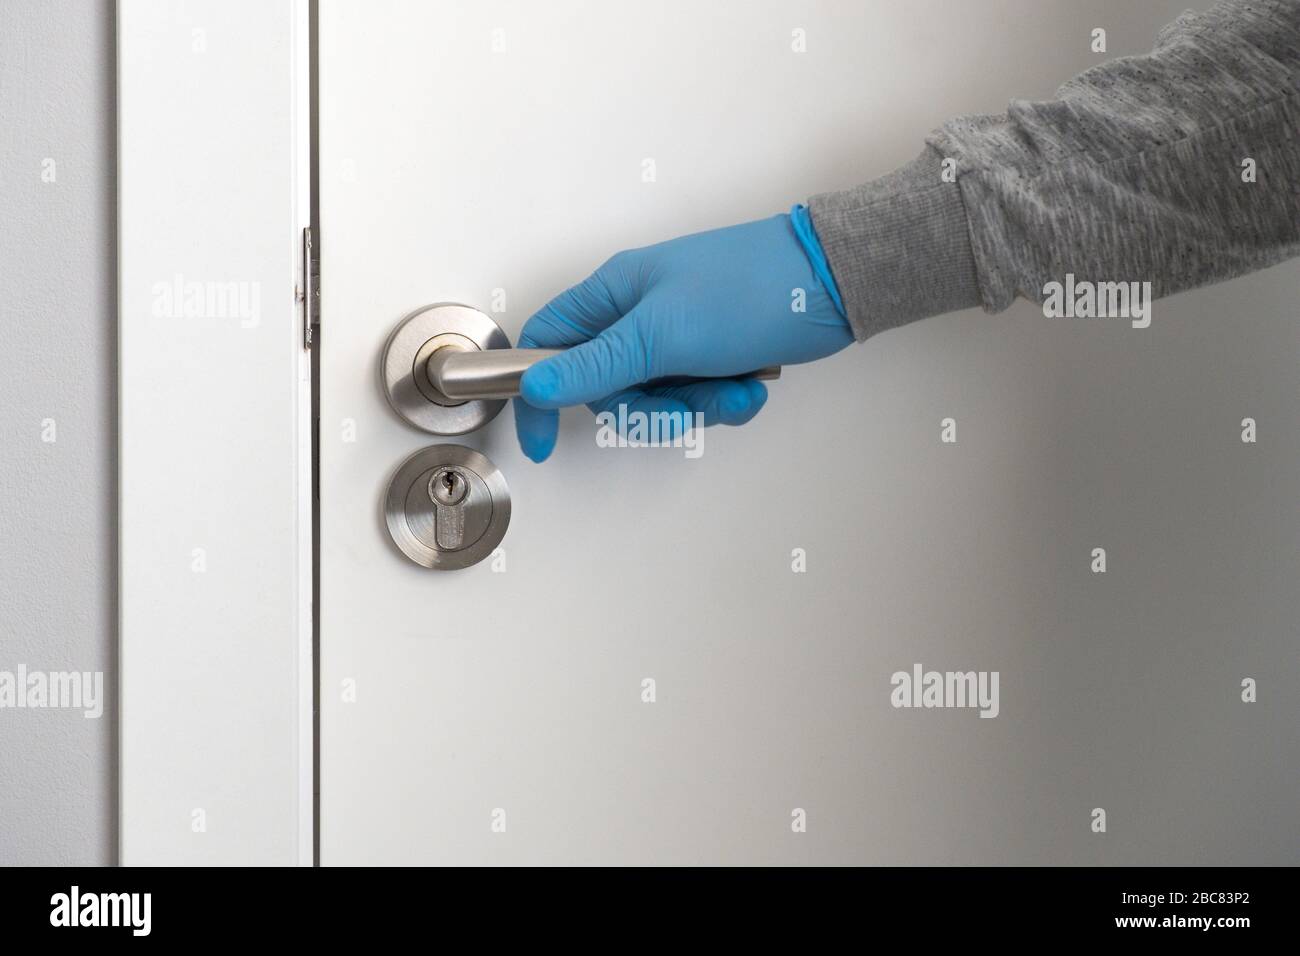 Une main dans un gant de protection bleu tient un pommeau de porte et est sur le point d'ouvrir la porte. Concept de santé et de protection. Banque D'Images